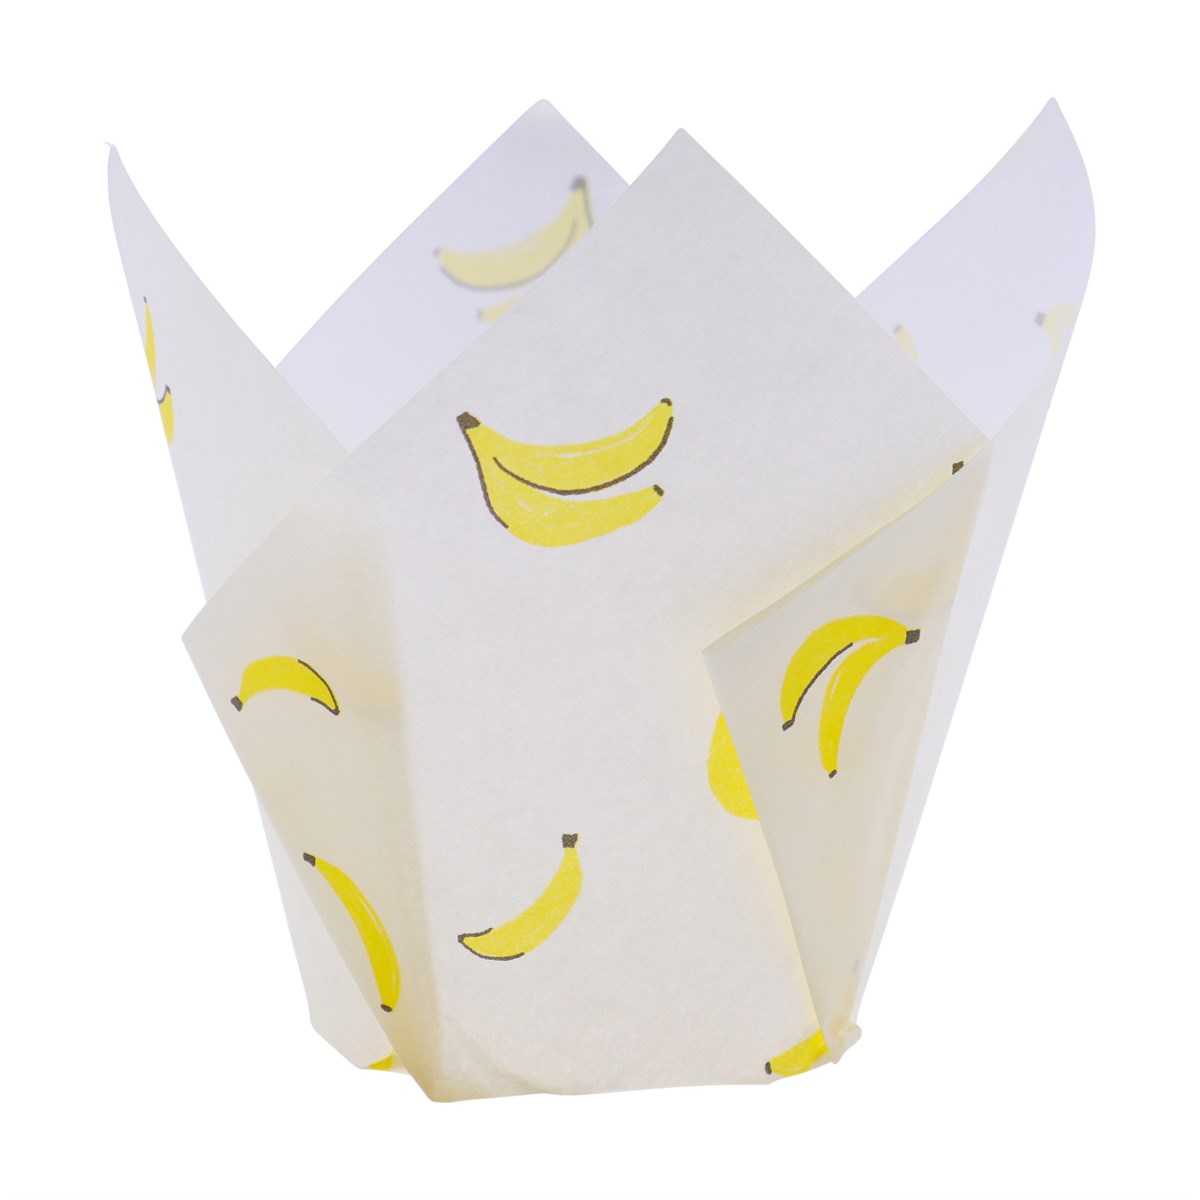 Caissettes à muffins en forme de tulipe lot de 24 - Bananes